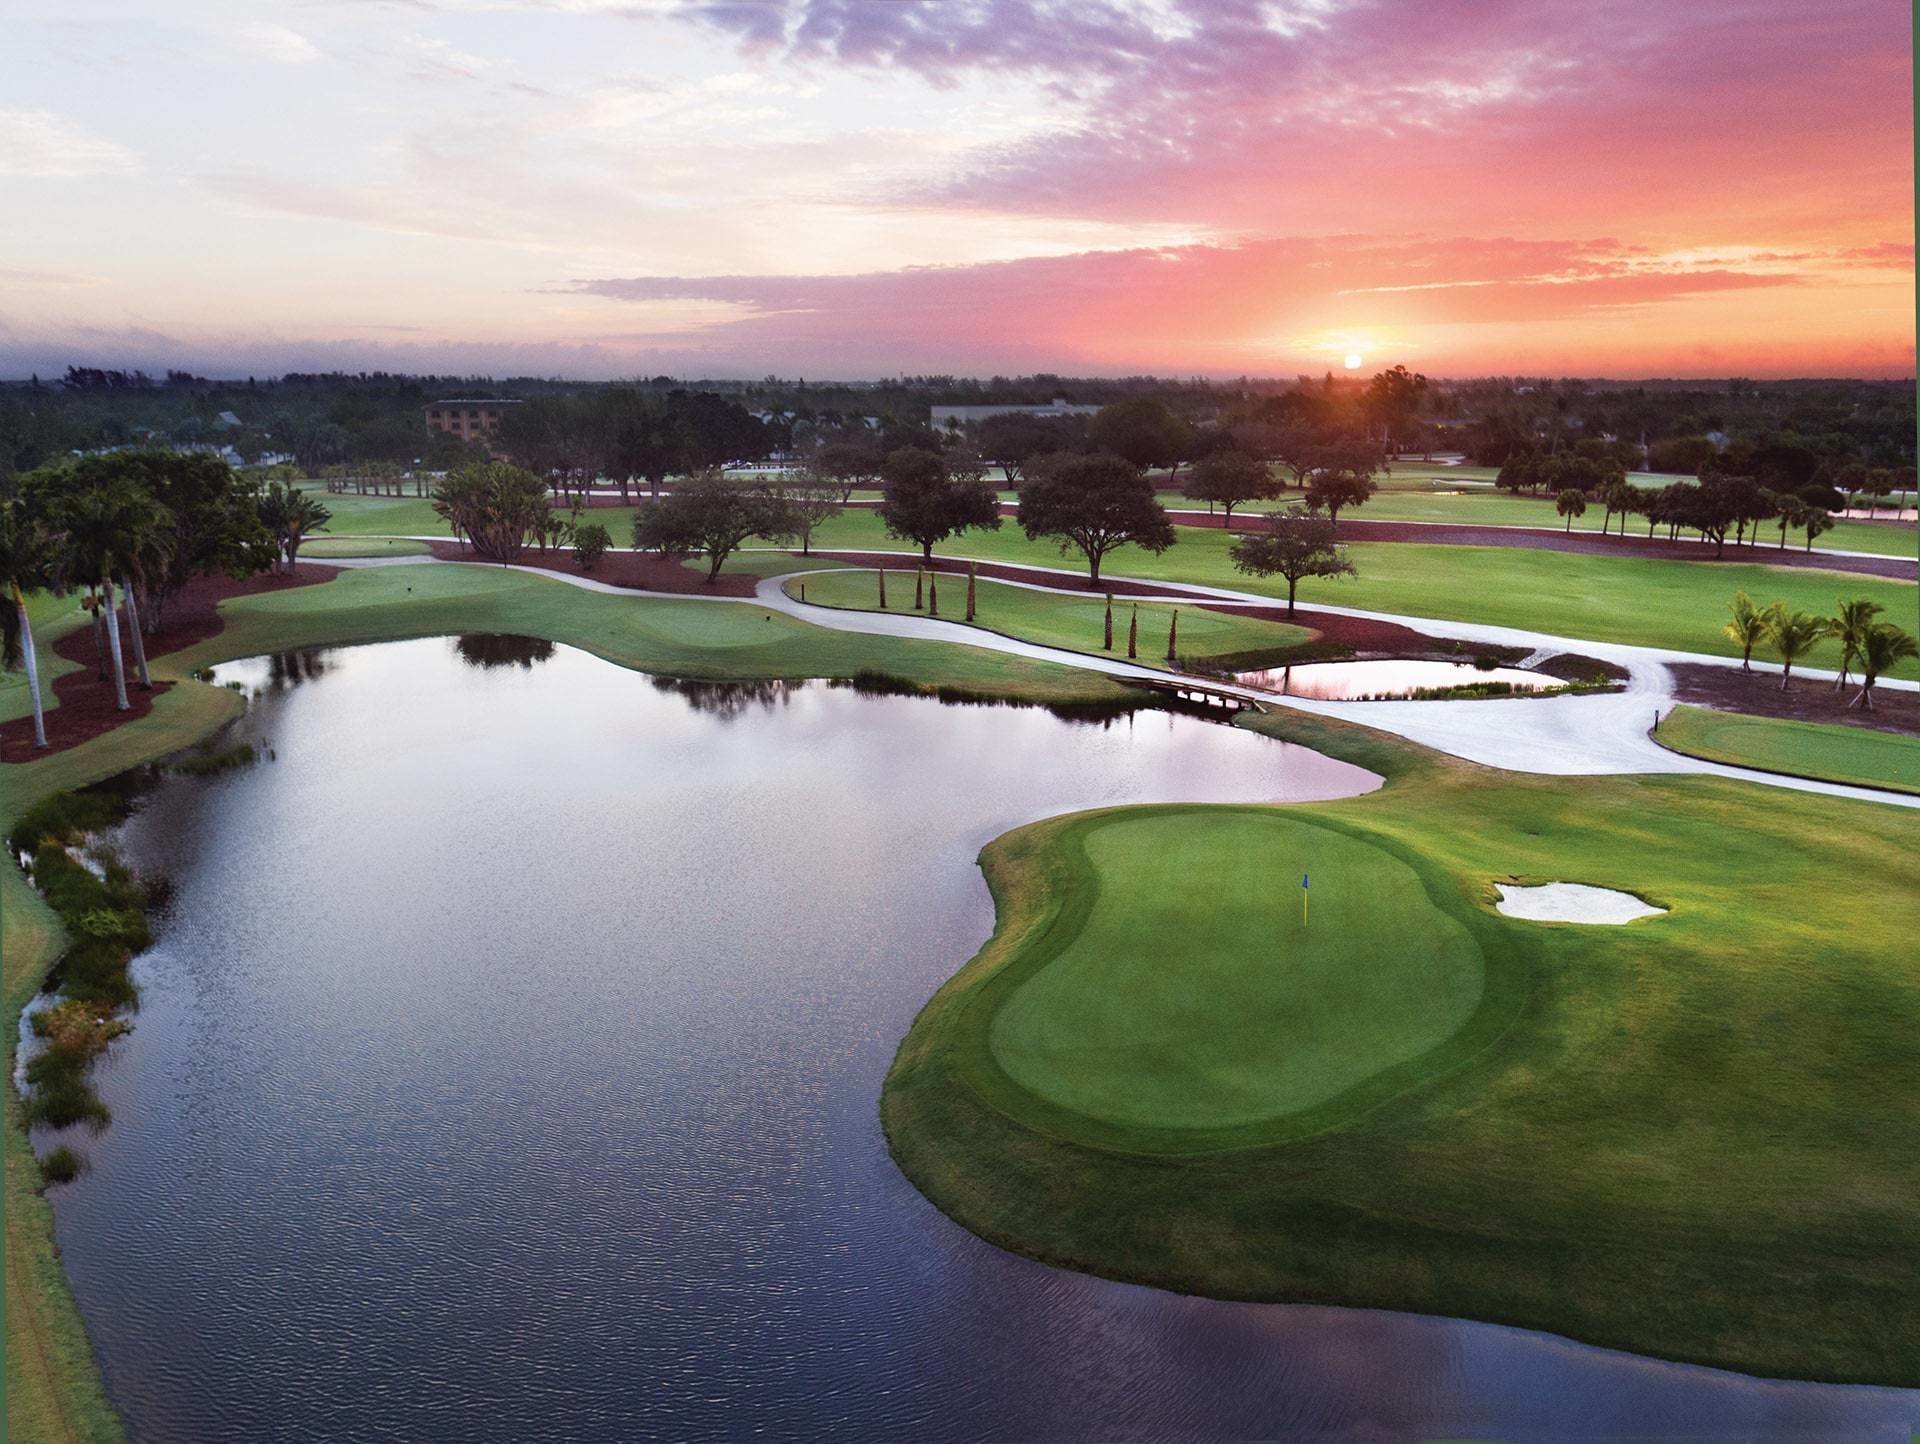 21 Favorite Golf Resort Getaways in the U.S.